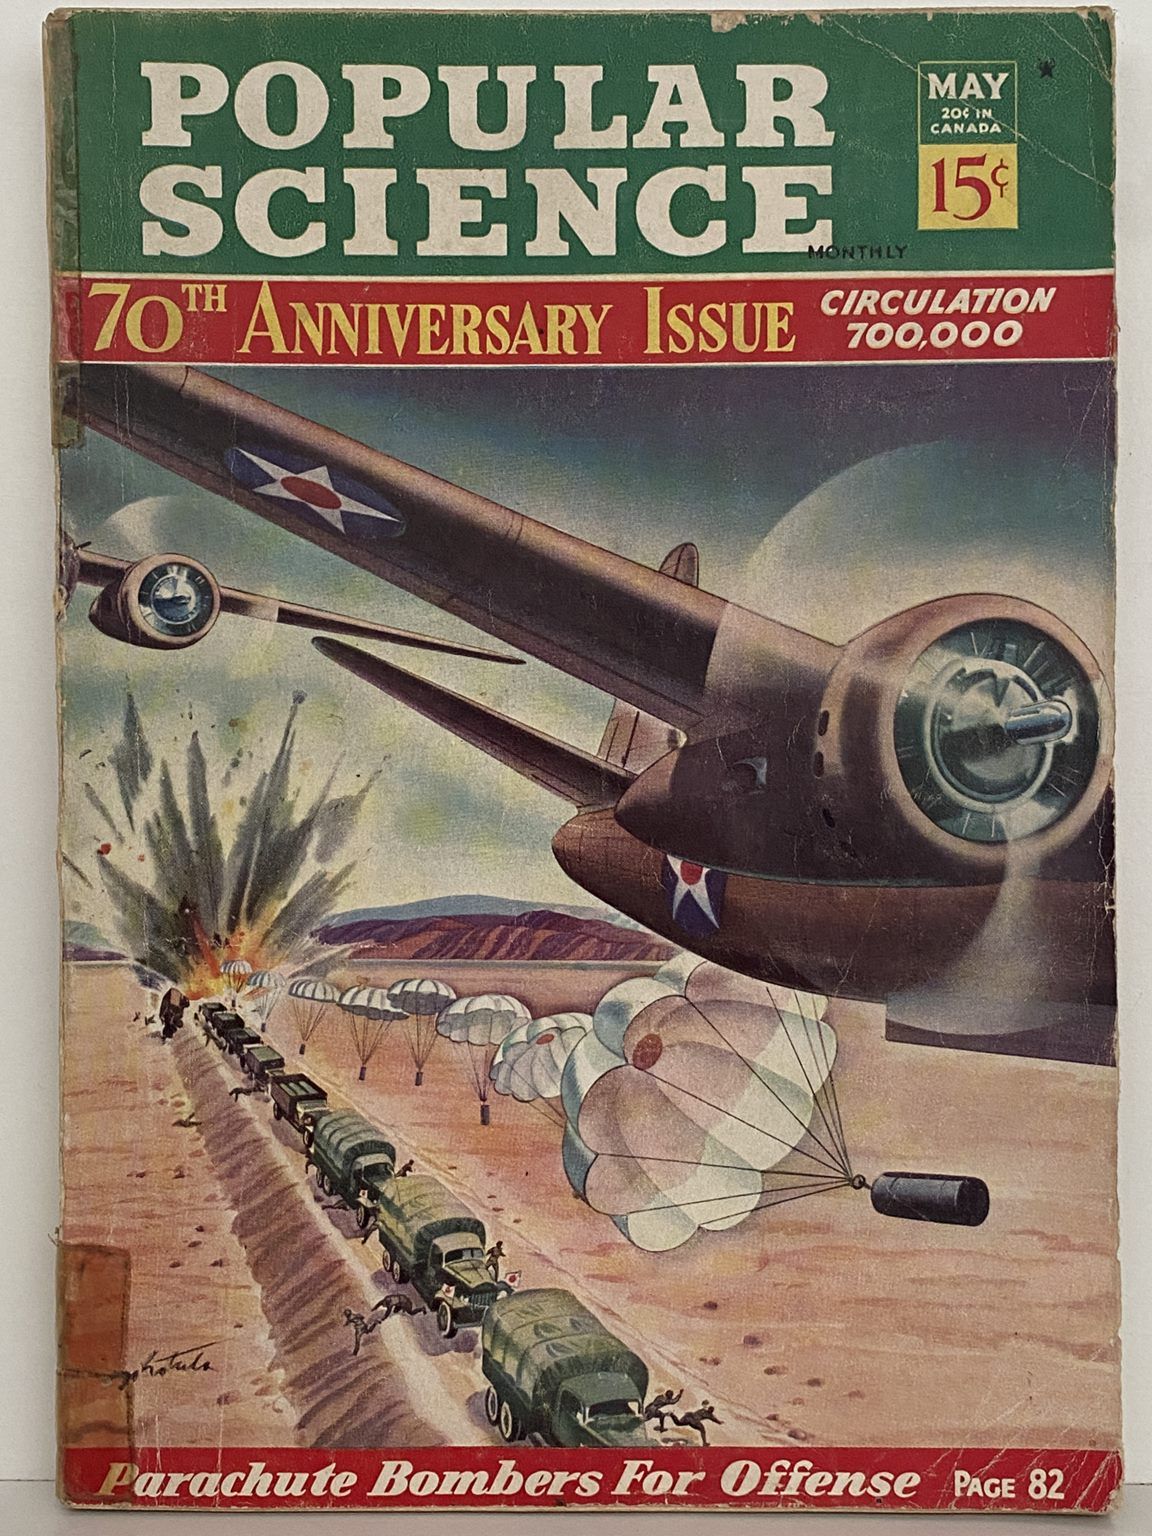 VINTAGE MAGAZINE: Popular Science, Vol 140, No 5. - May 1942